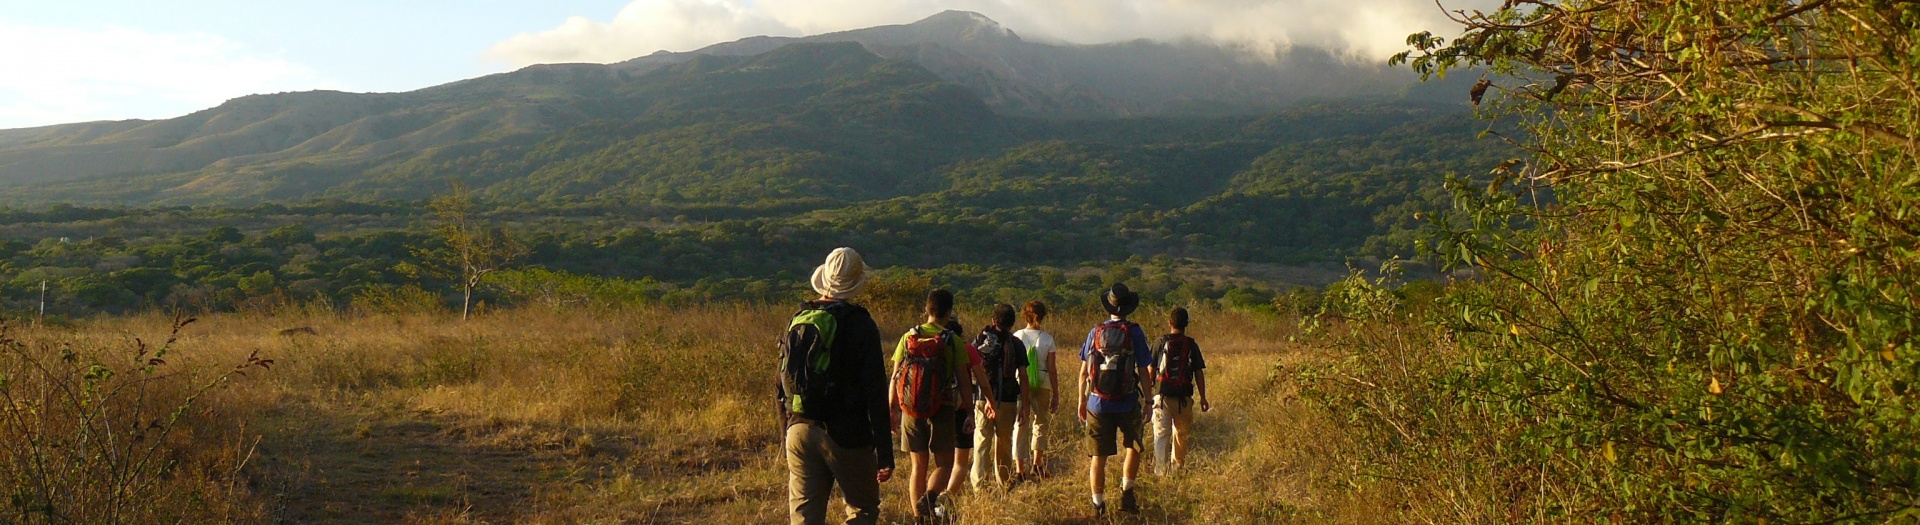 Voyages randonnée et trek au Costa Rica